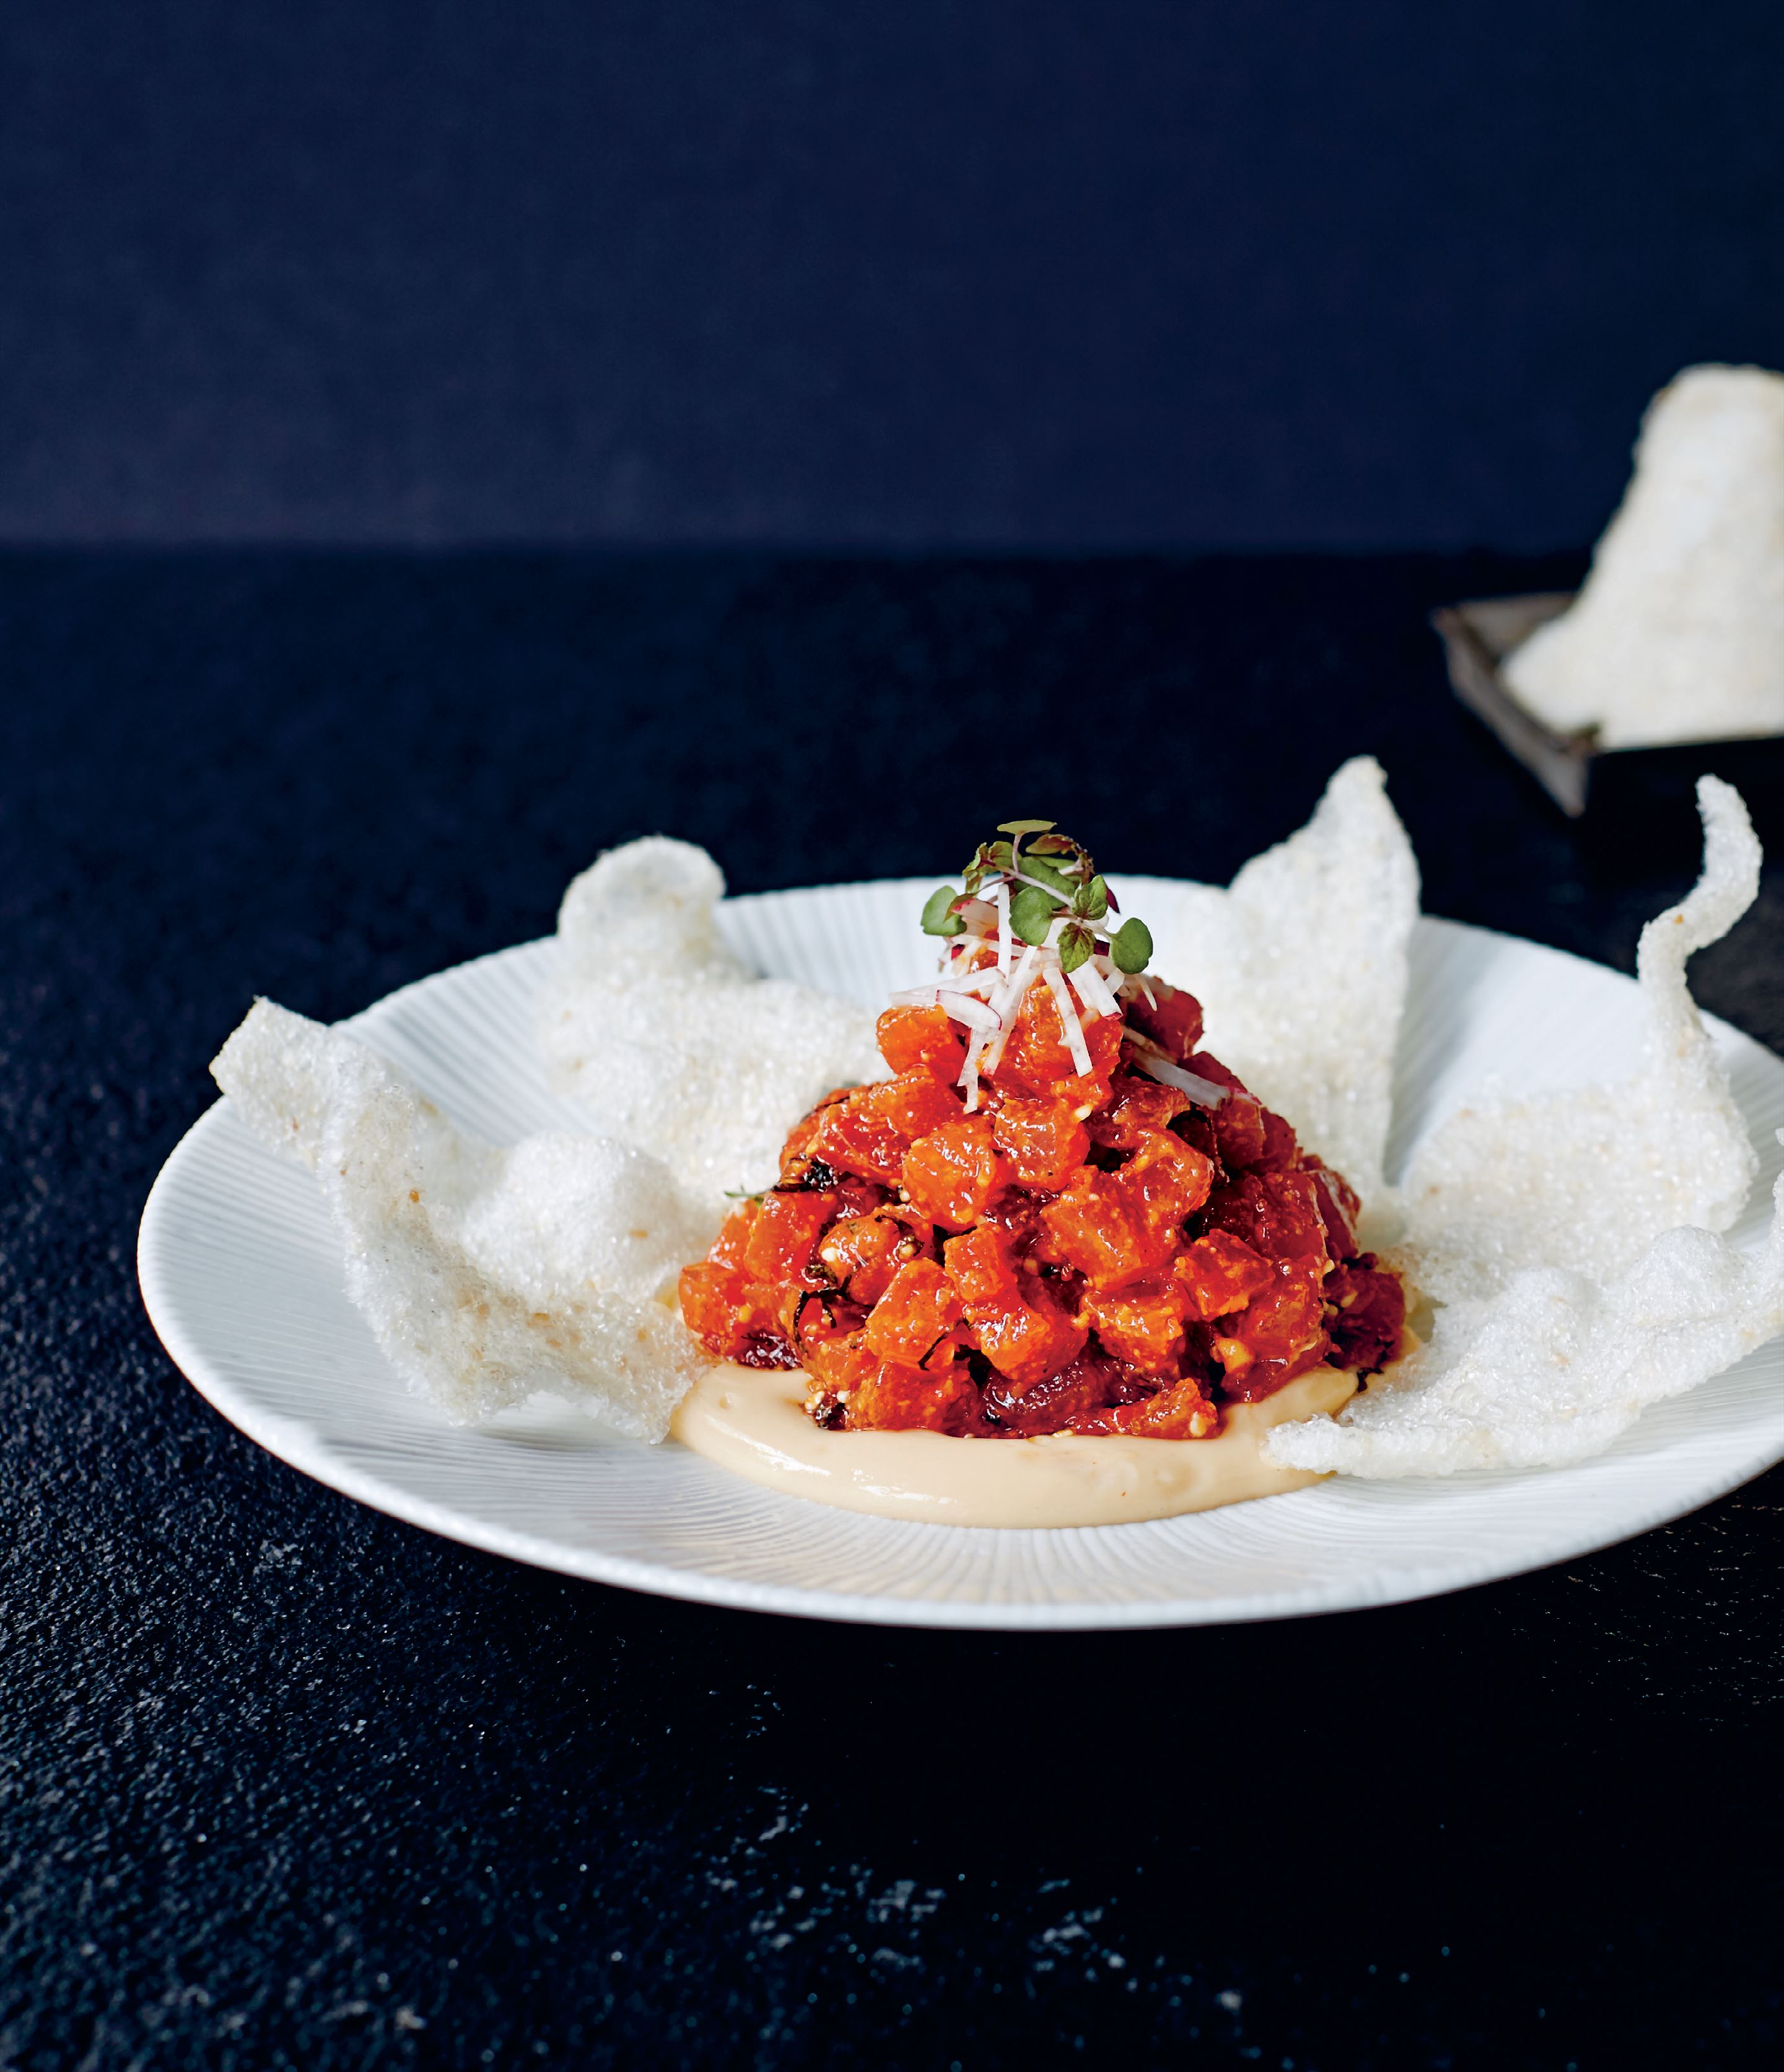 Spiced tuna tartare with shiso, yuzu custard, radish & rice crackers